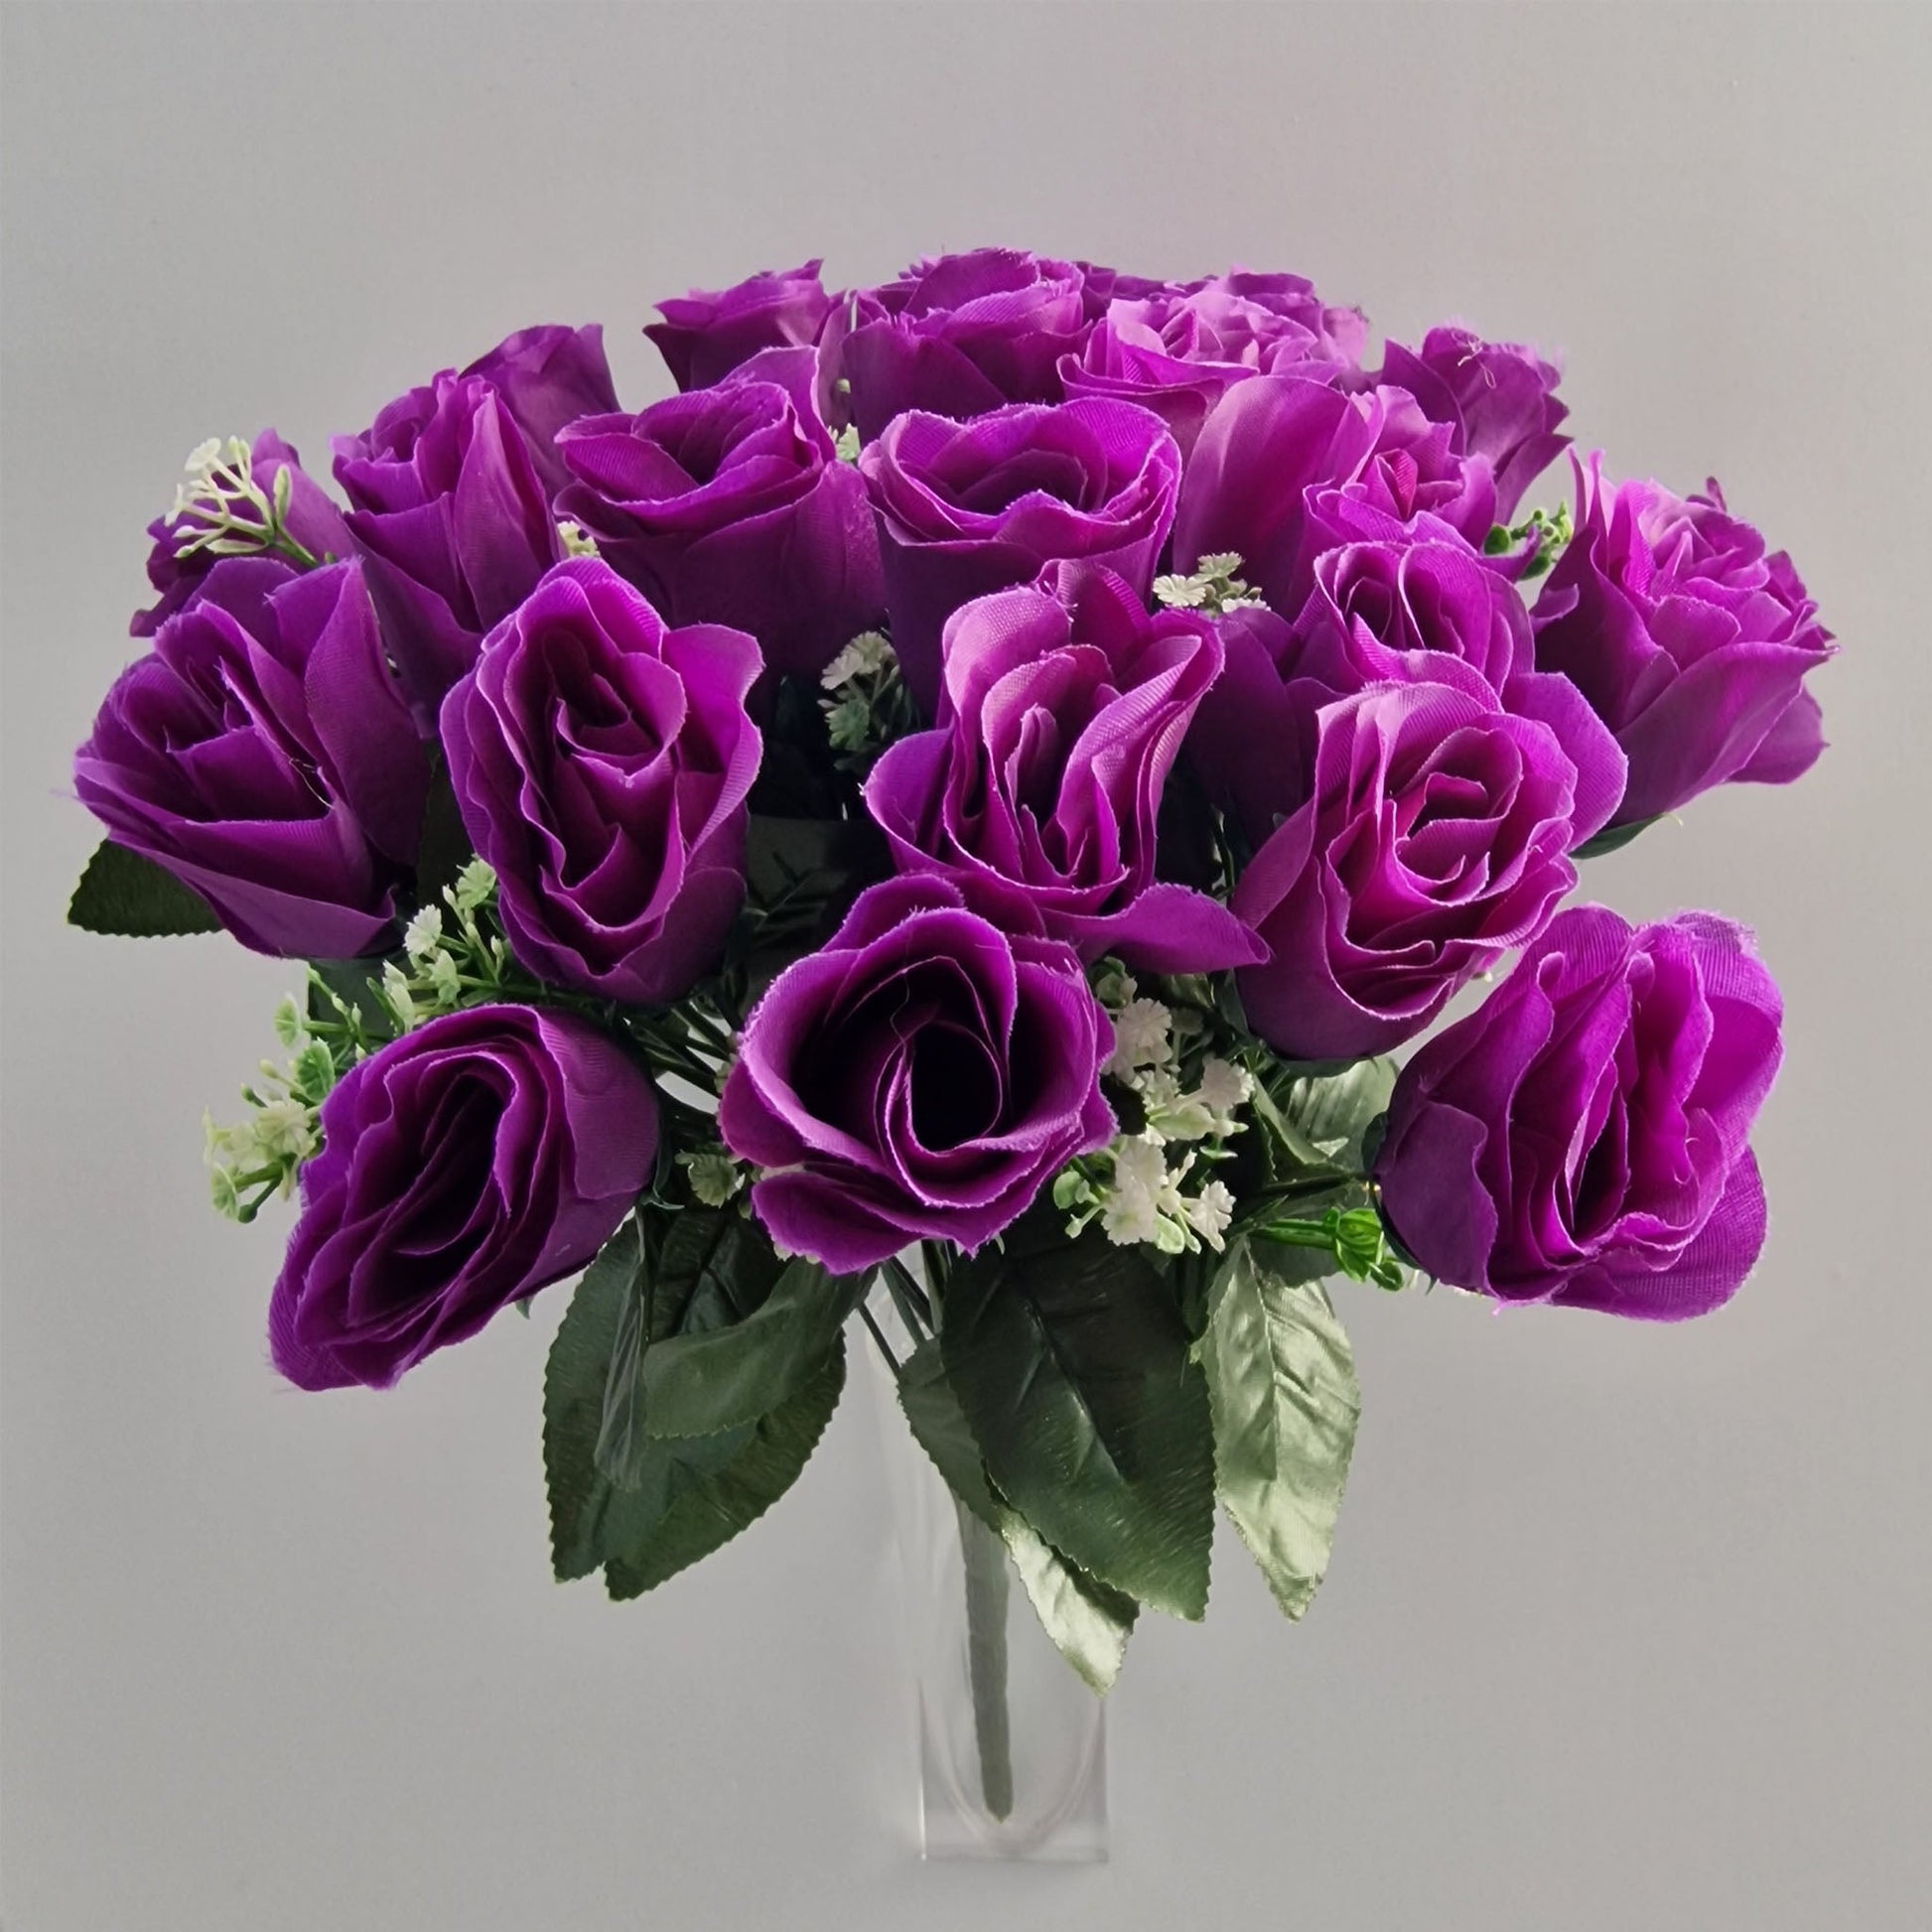 24 Head Large Rose Bouquet in Purple - Amor Flowers